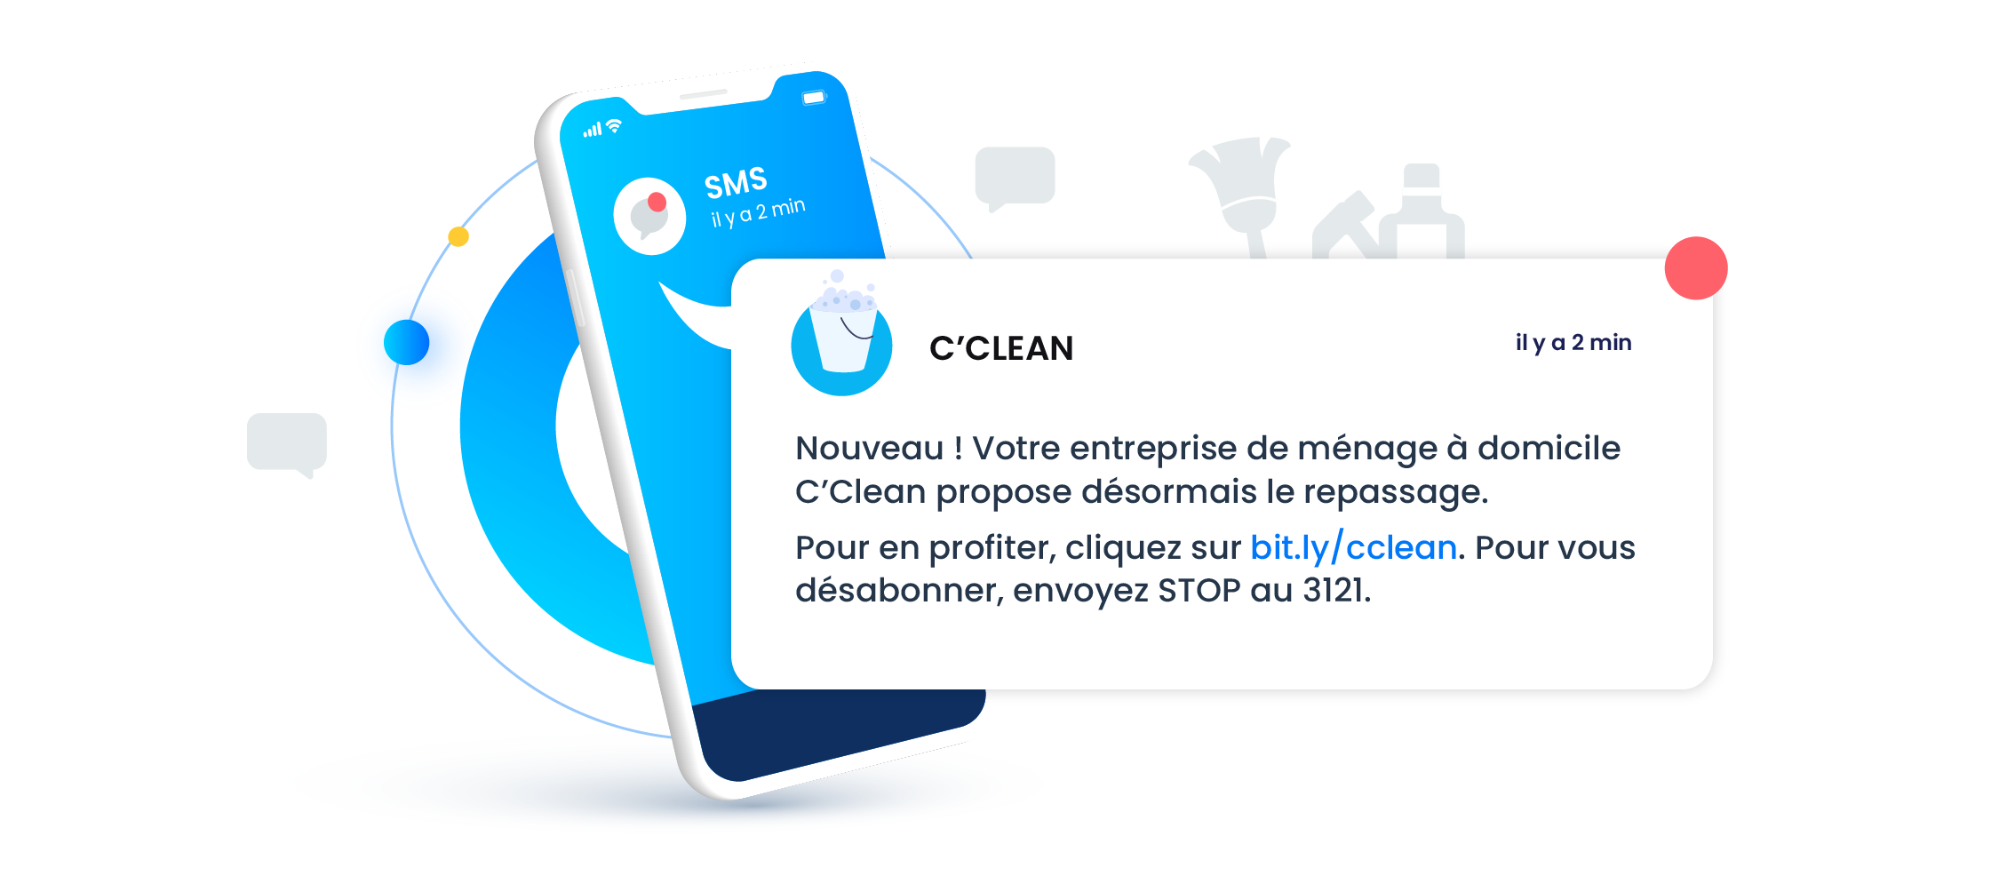 SMS - CClean